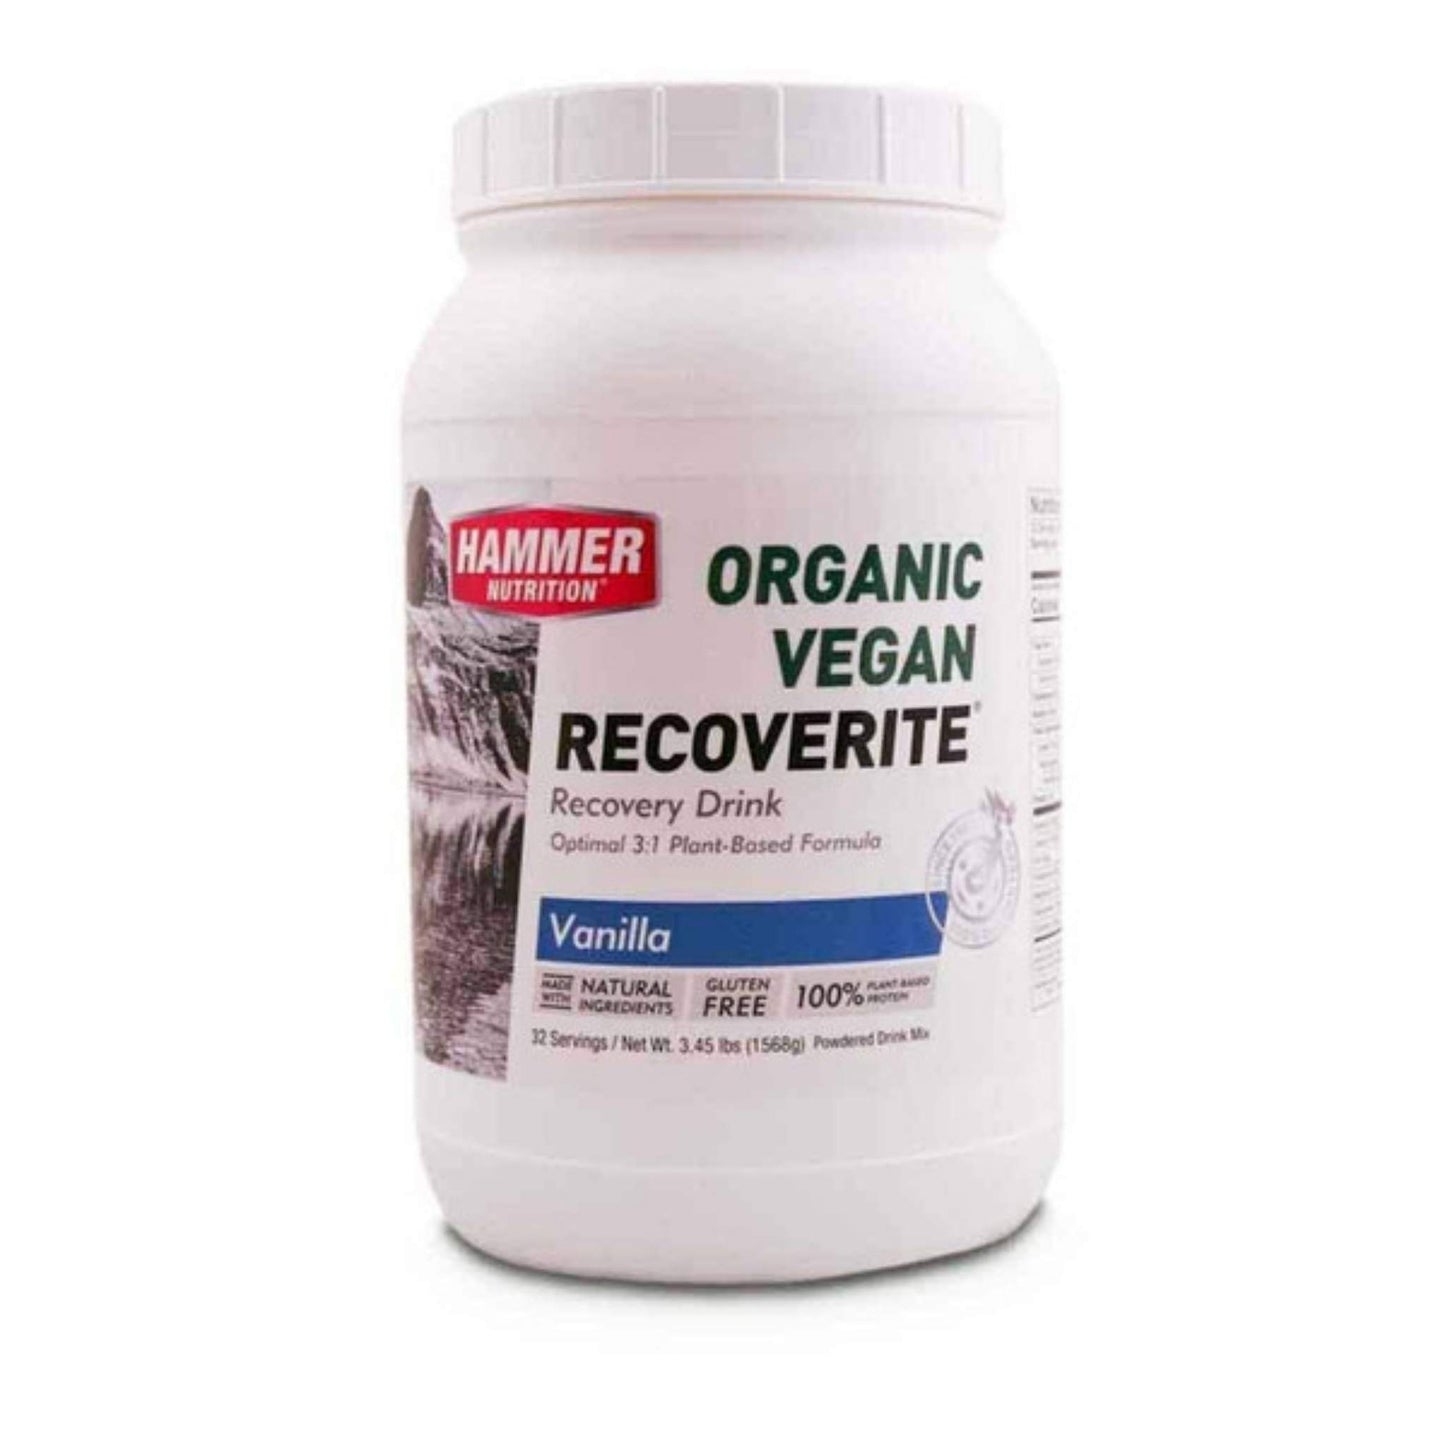 Hammer Nutrition - Vegan Recoverite, Vanilla, 32 Servings, Team Perfect